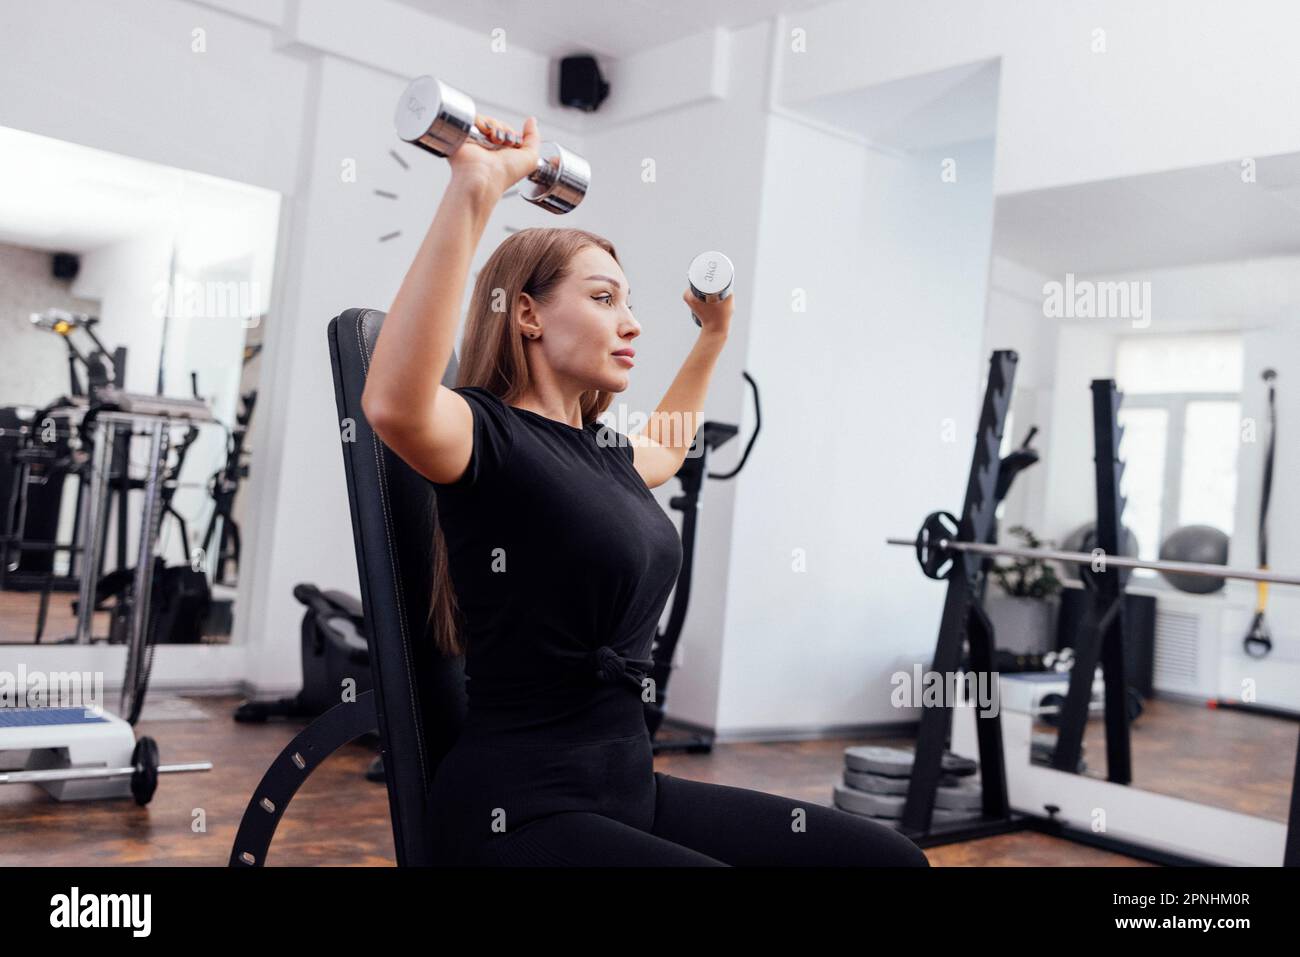 La jeune femme blondy sportive en noir fait de la dumbbell presse sur le banc universel incliné à la salle de gym ou au studio de fitness. Pompage des muscles de b Banque D'Images